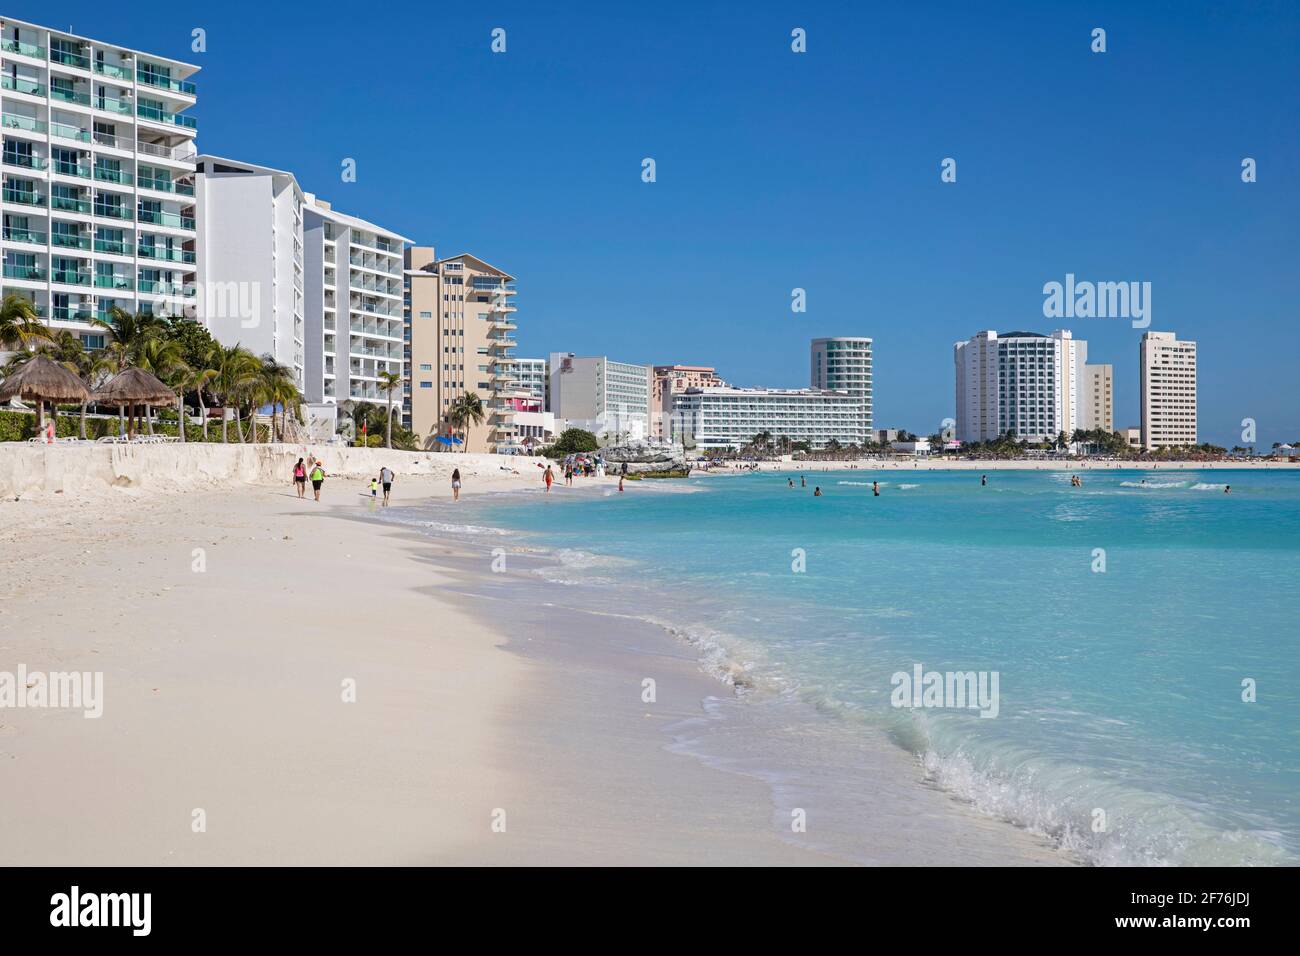 Plage de sable blanc et hôtels de montagne le long de la mer des Caraïbes à la ville de Cancun dans l'état mexicain Quintana Roo, côte nord de la péninsule de Yucatán, Mexique Banque D'Images